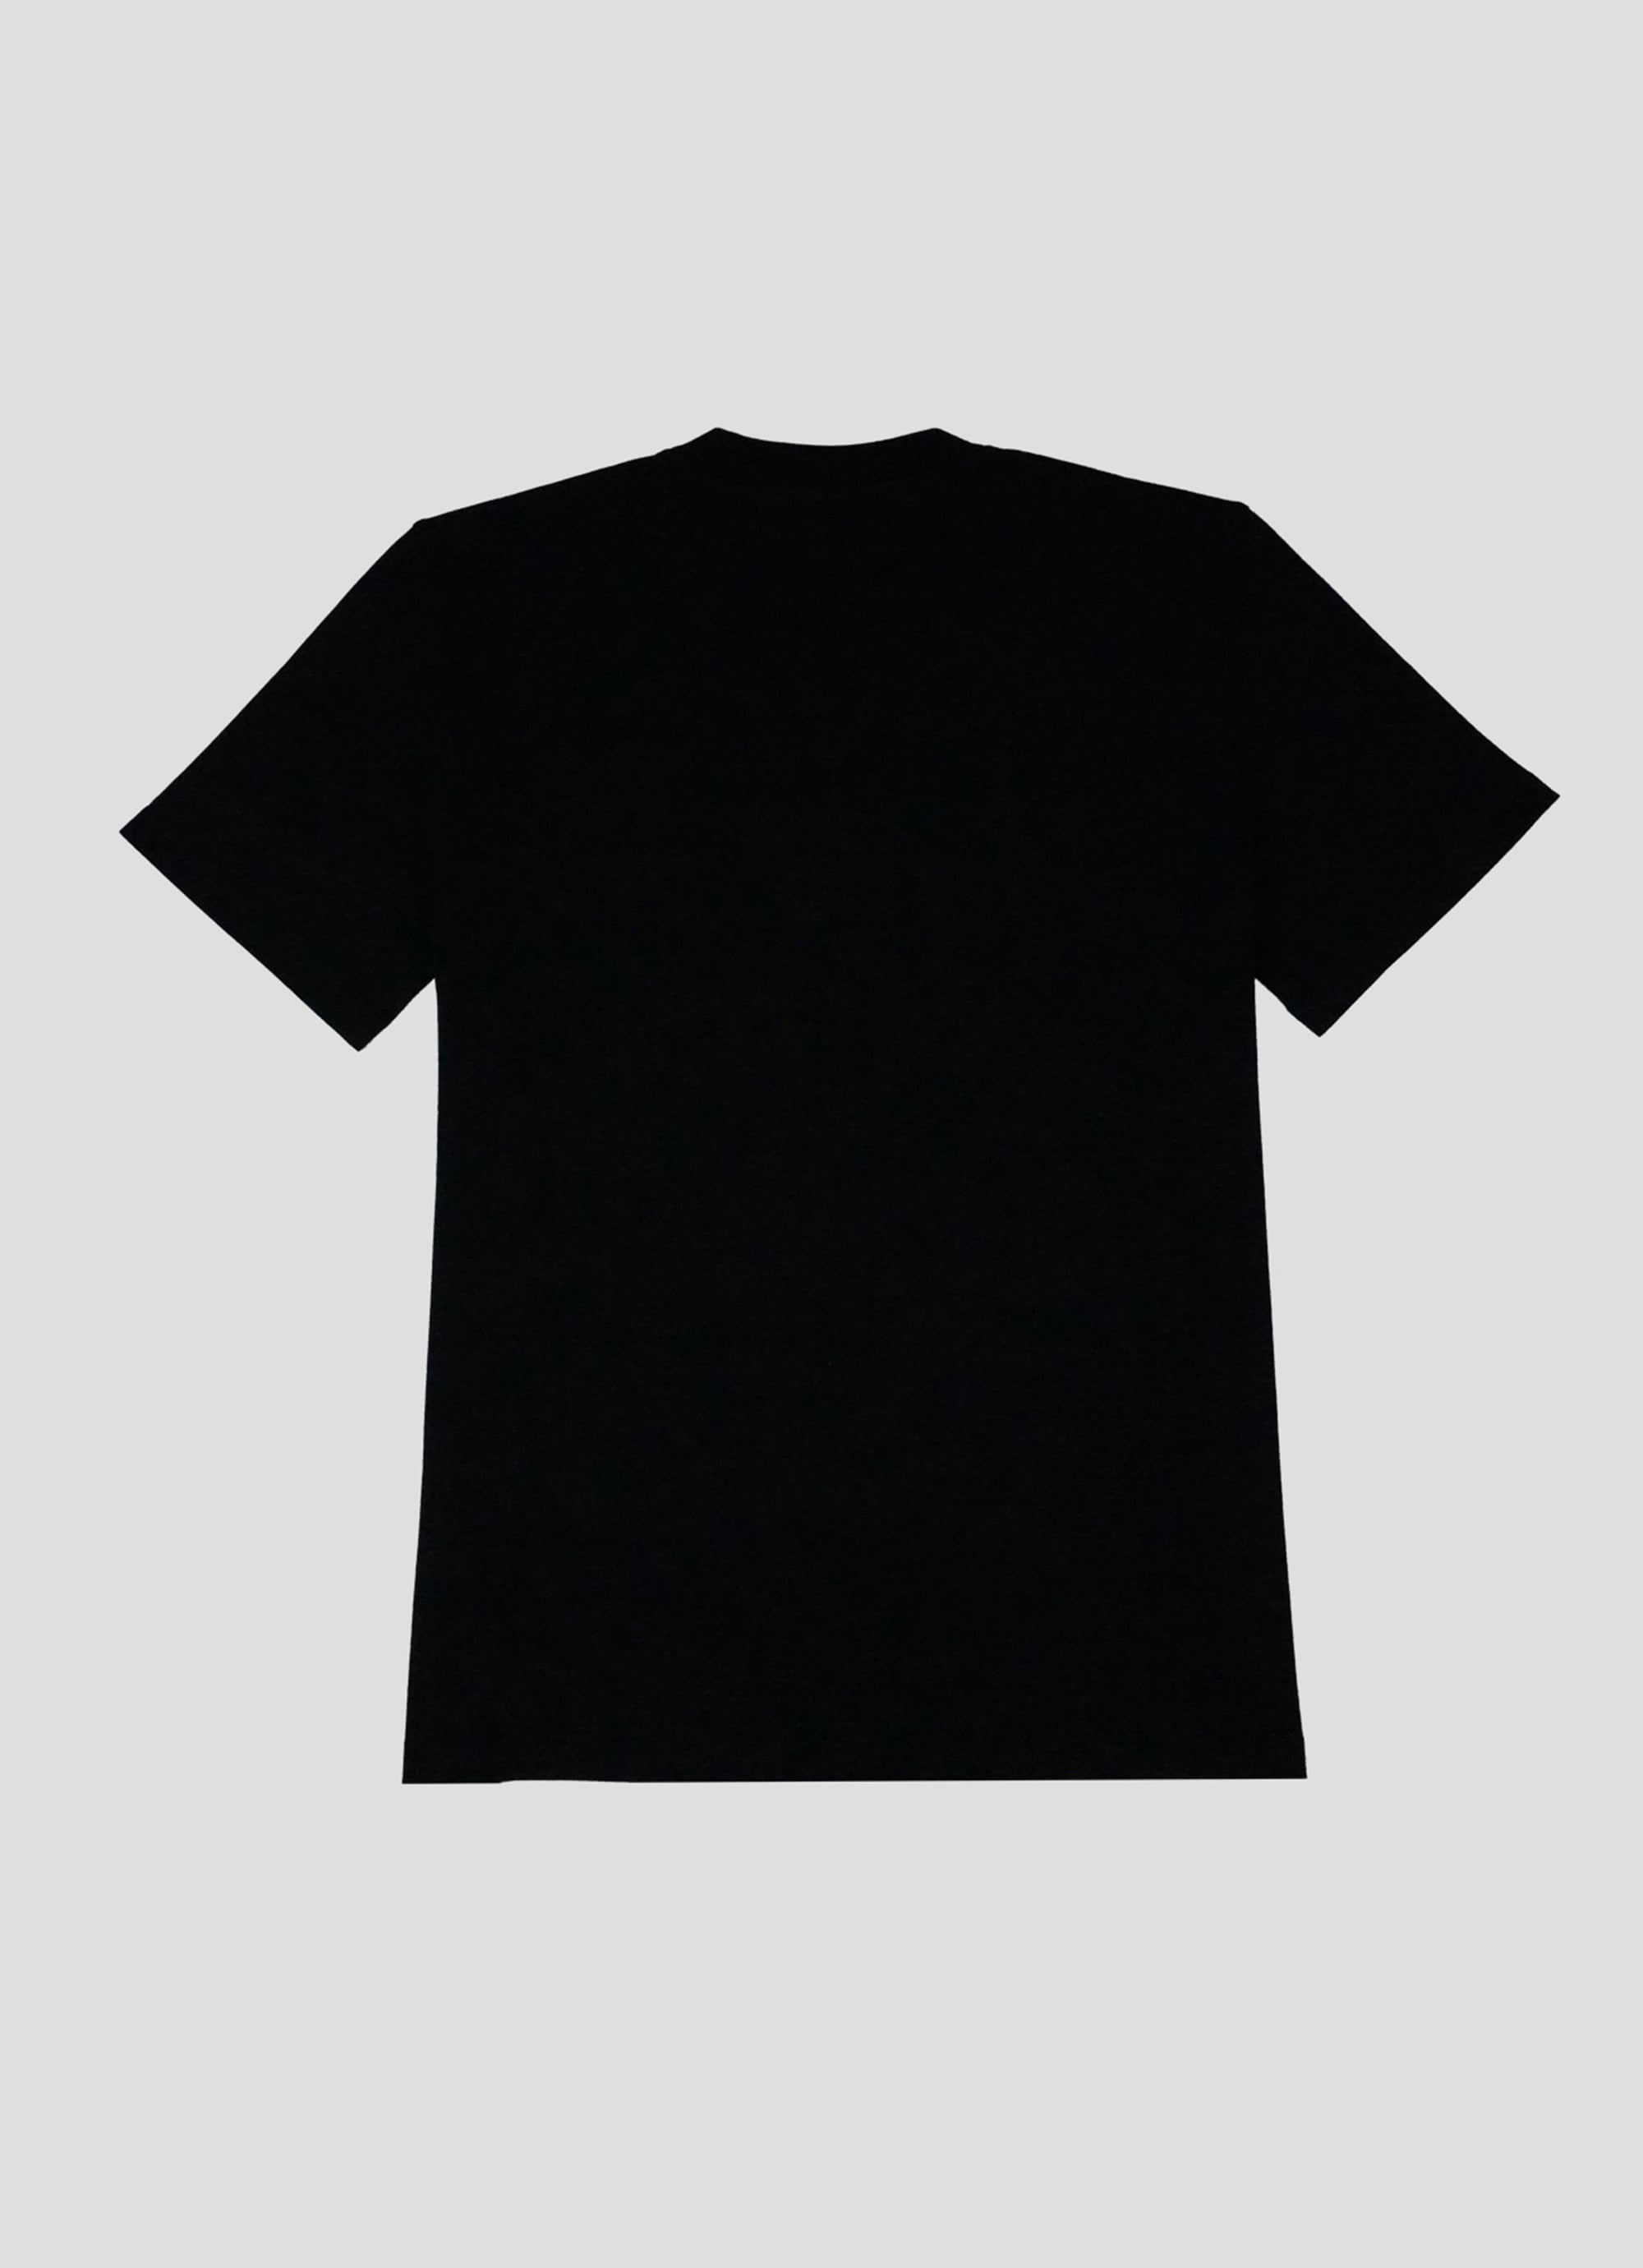 MSGM ブラッシュロゴTシャツ【FOIL PRINT】 詳細画像 ブラック×ゴールド 2